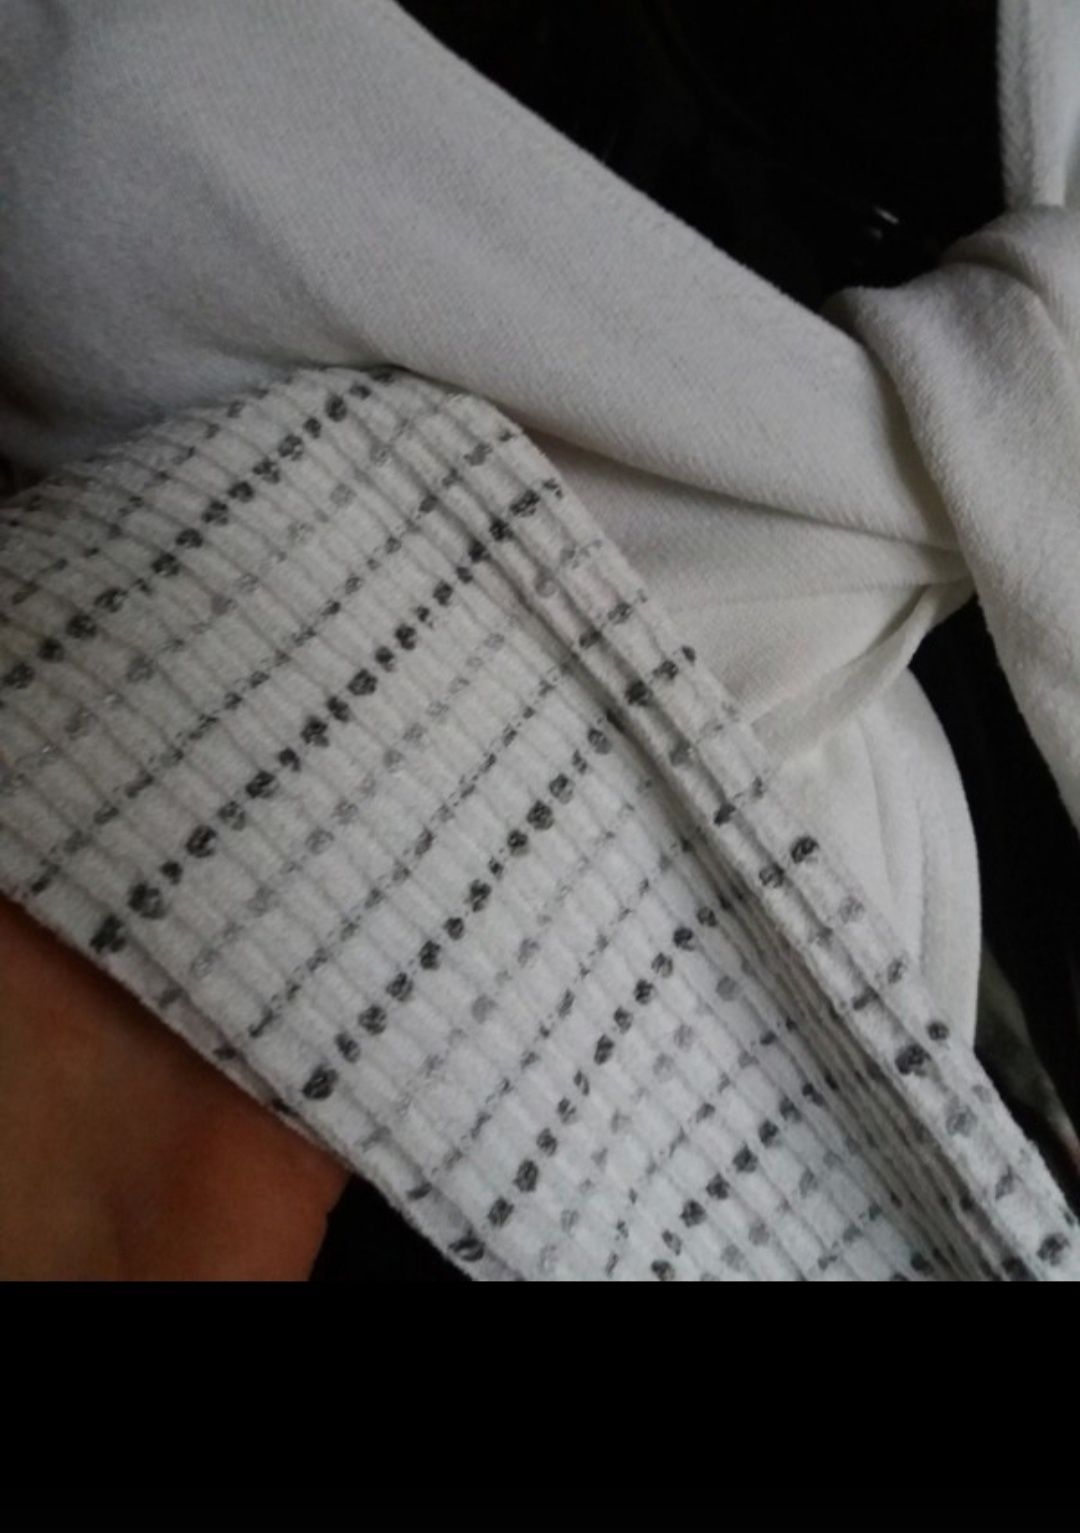 Emporio Armani Vintage białe bolerko krótki sweterek wiązany S-M